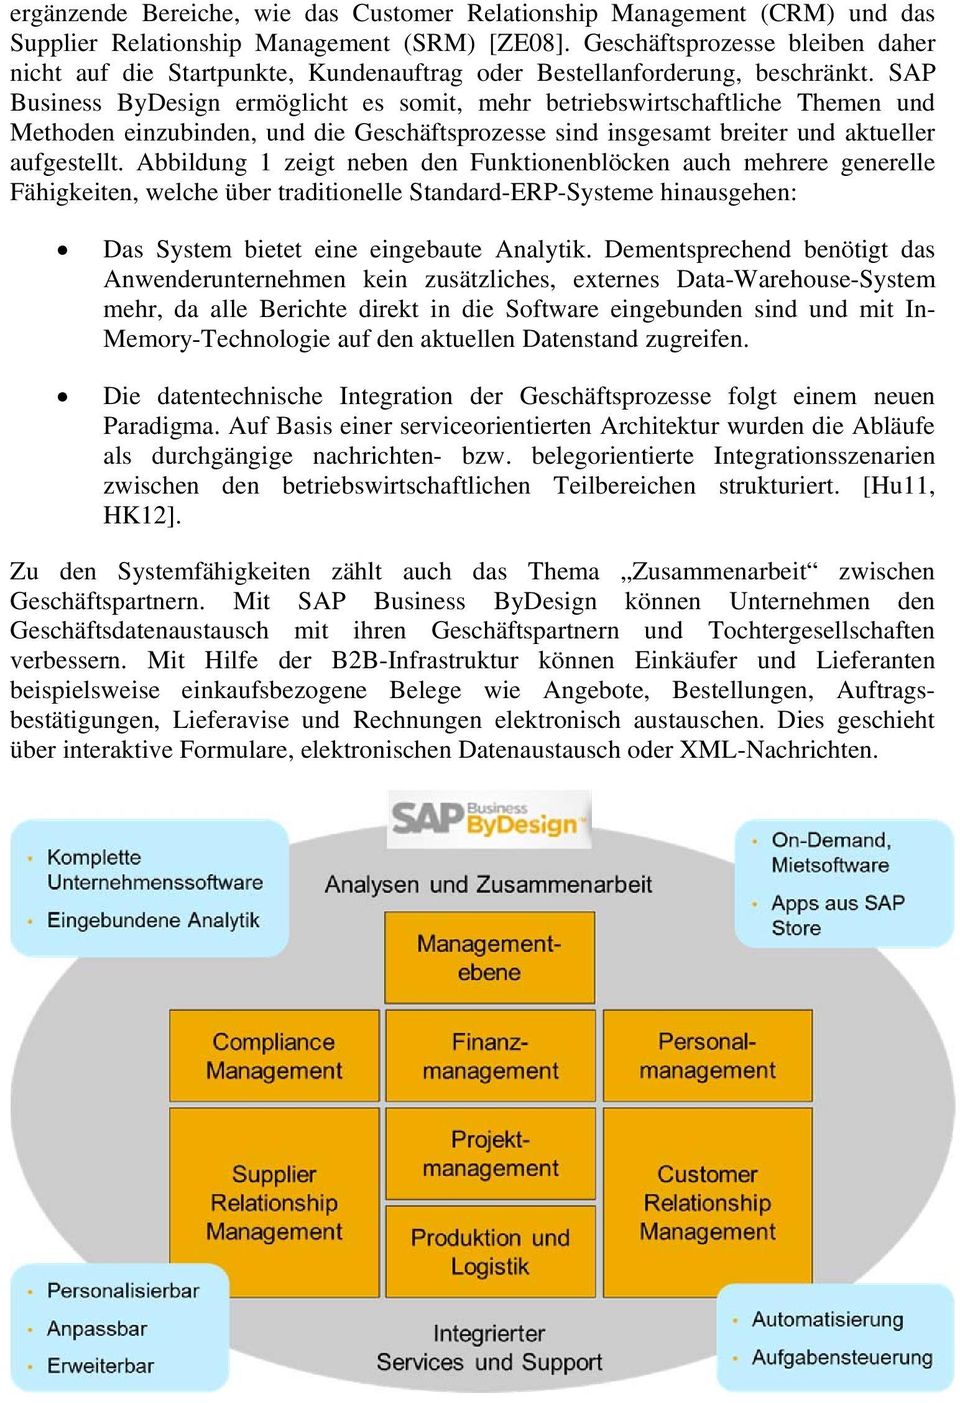 SAP Business ByDesign ermöglicht es somit, mehr betriebswirtschaftliche Themen und Methoden einzubinden, und die Geschäftsprozesse sind insgesamt breiter und aktueller aufgestellt.